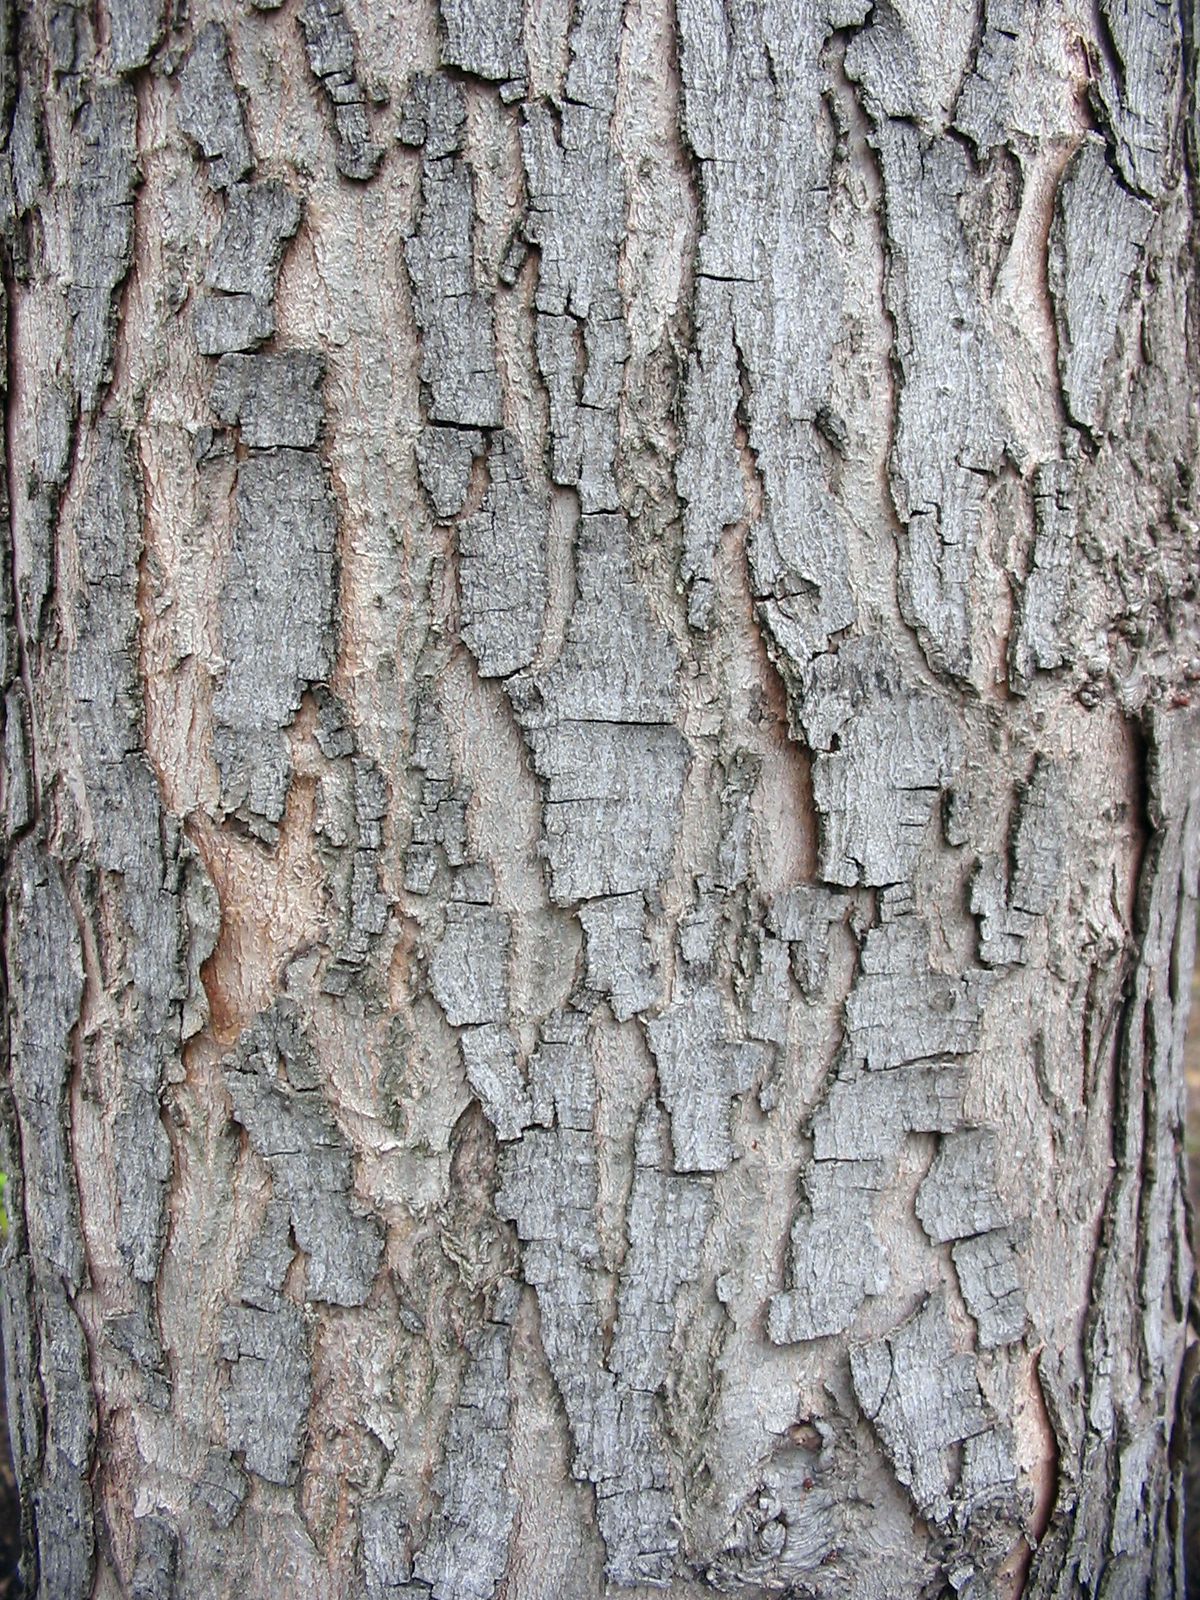 Corteza de árbol